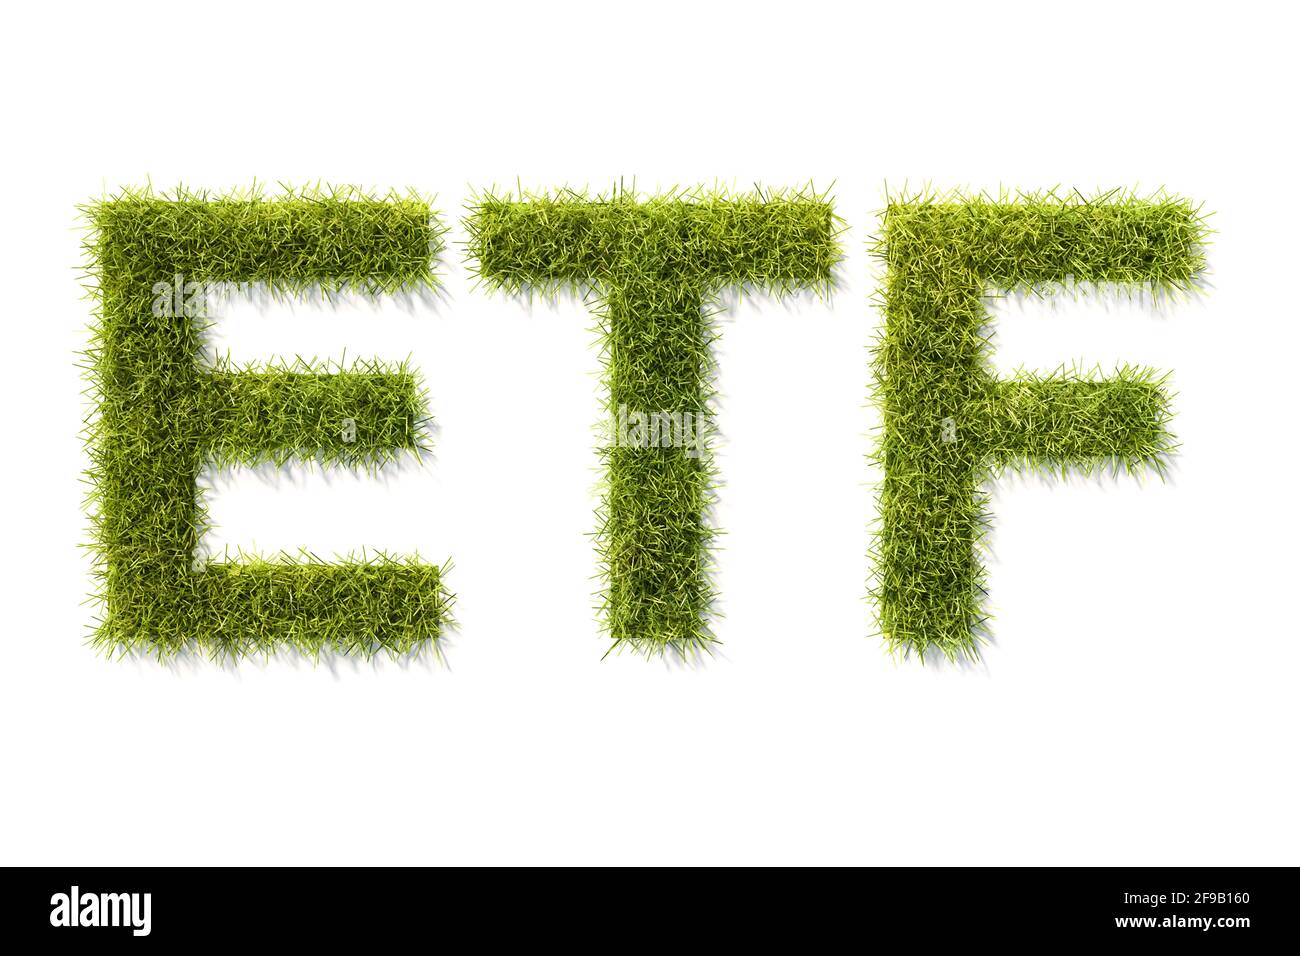 Vert herbe lettres ETF isolé sur blanc avec ombre. Concept pour les fonds négociés en bourse investissant selon les normes ESG (environnement gouvernance sociale). Banque D'Images